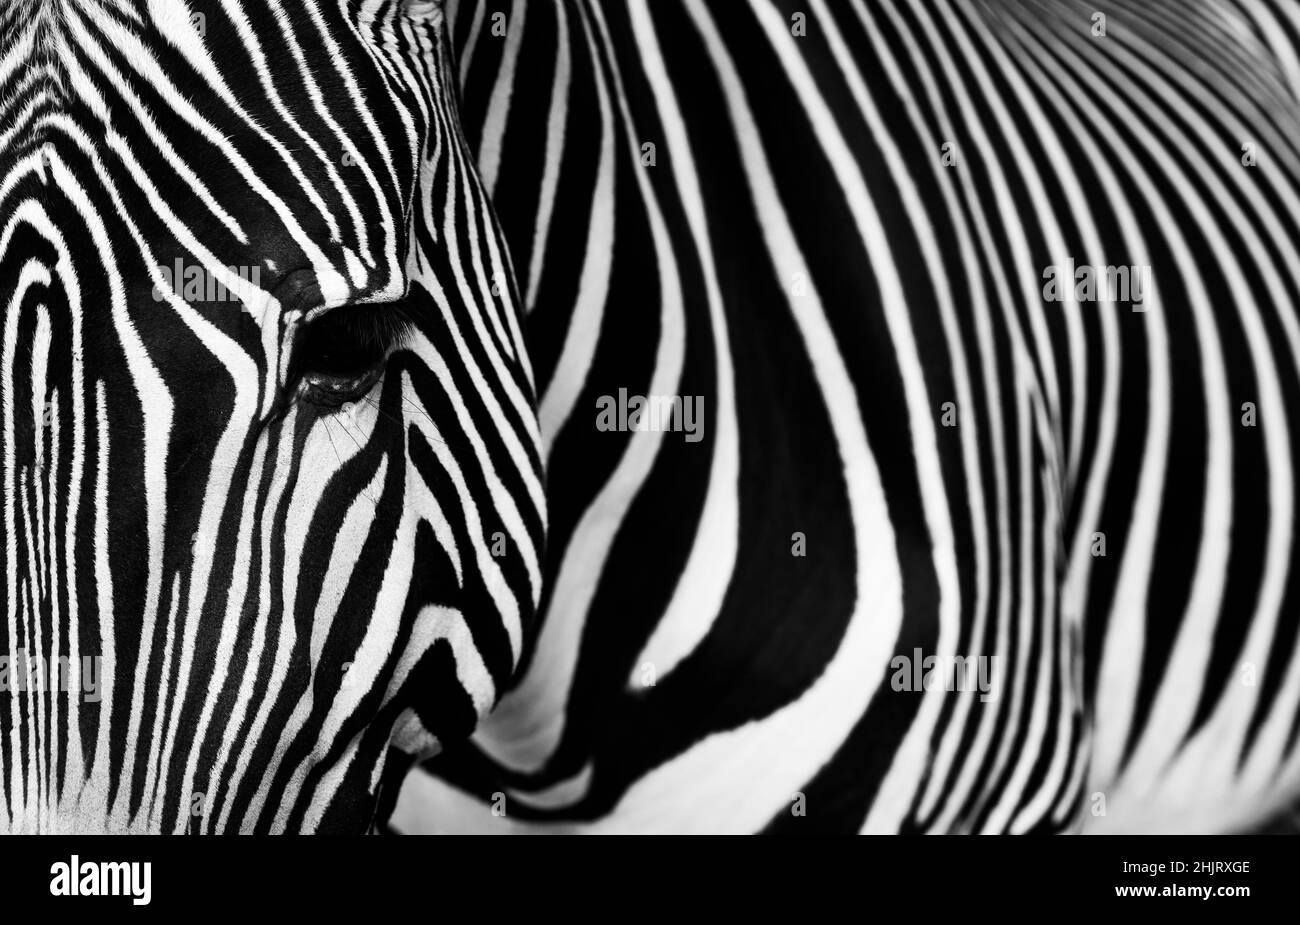 Zebra-Detail mit seinen typischen Streifen. Nahaufnahme Porträt von Zebra. Foto in Schwarzweiß. Stockfoto